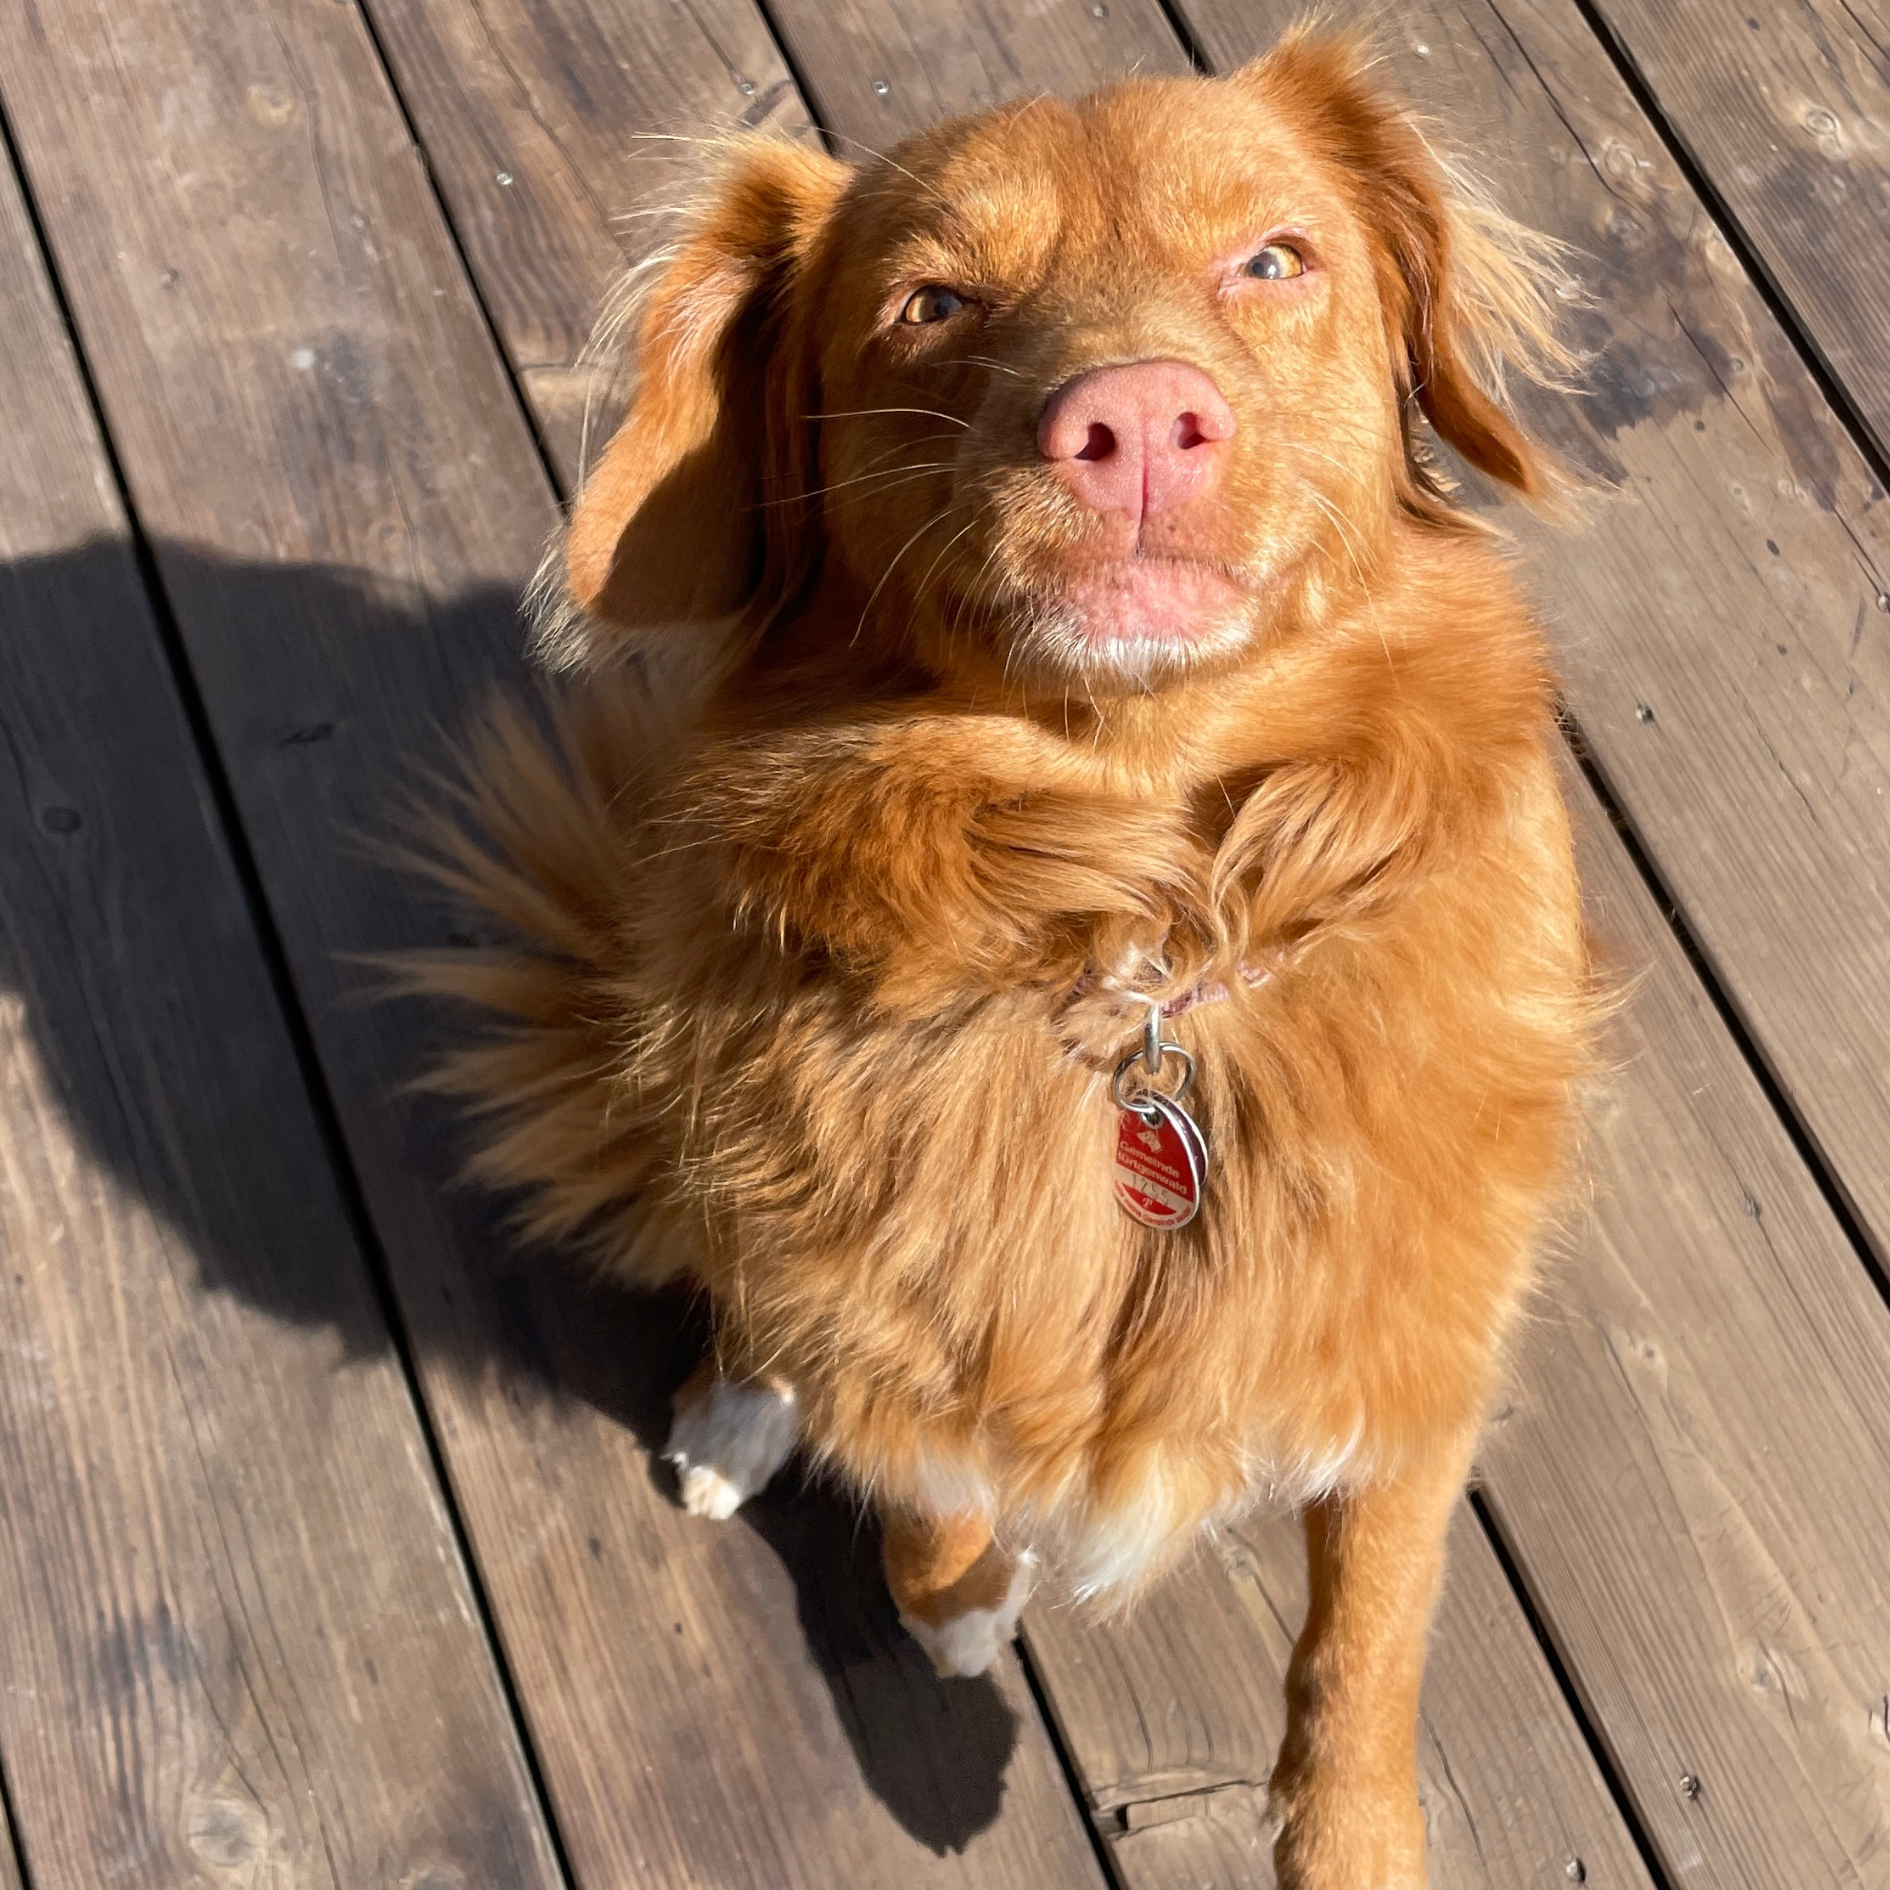 Gluecklicher Hund mit orangenem Fell und rosa Nase